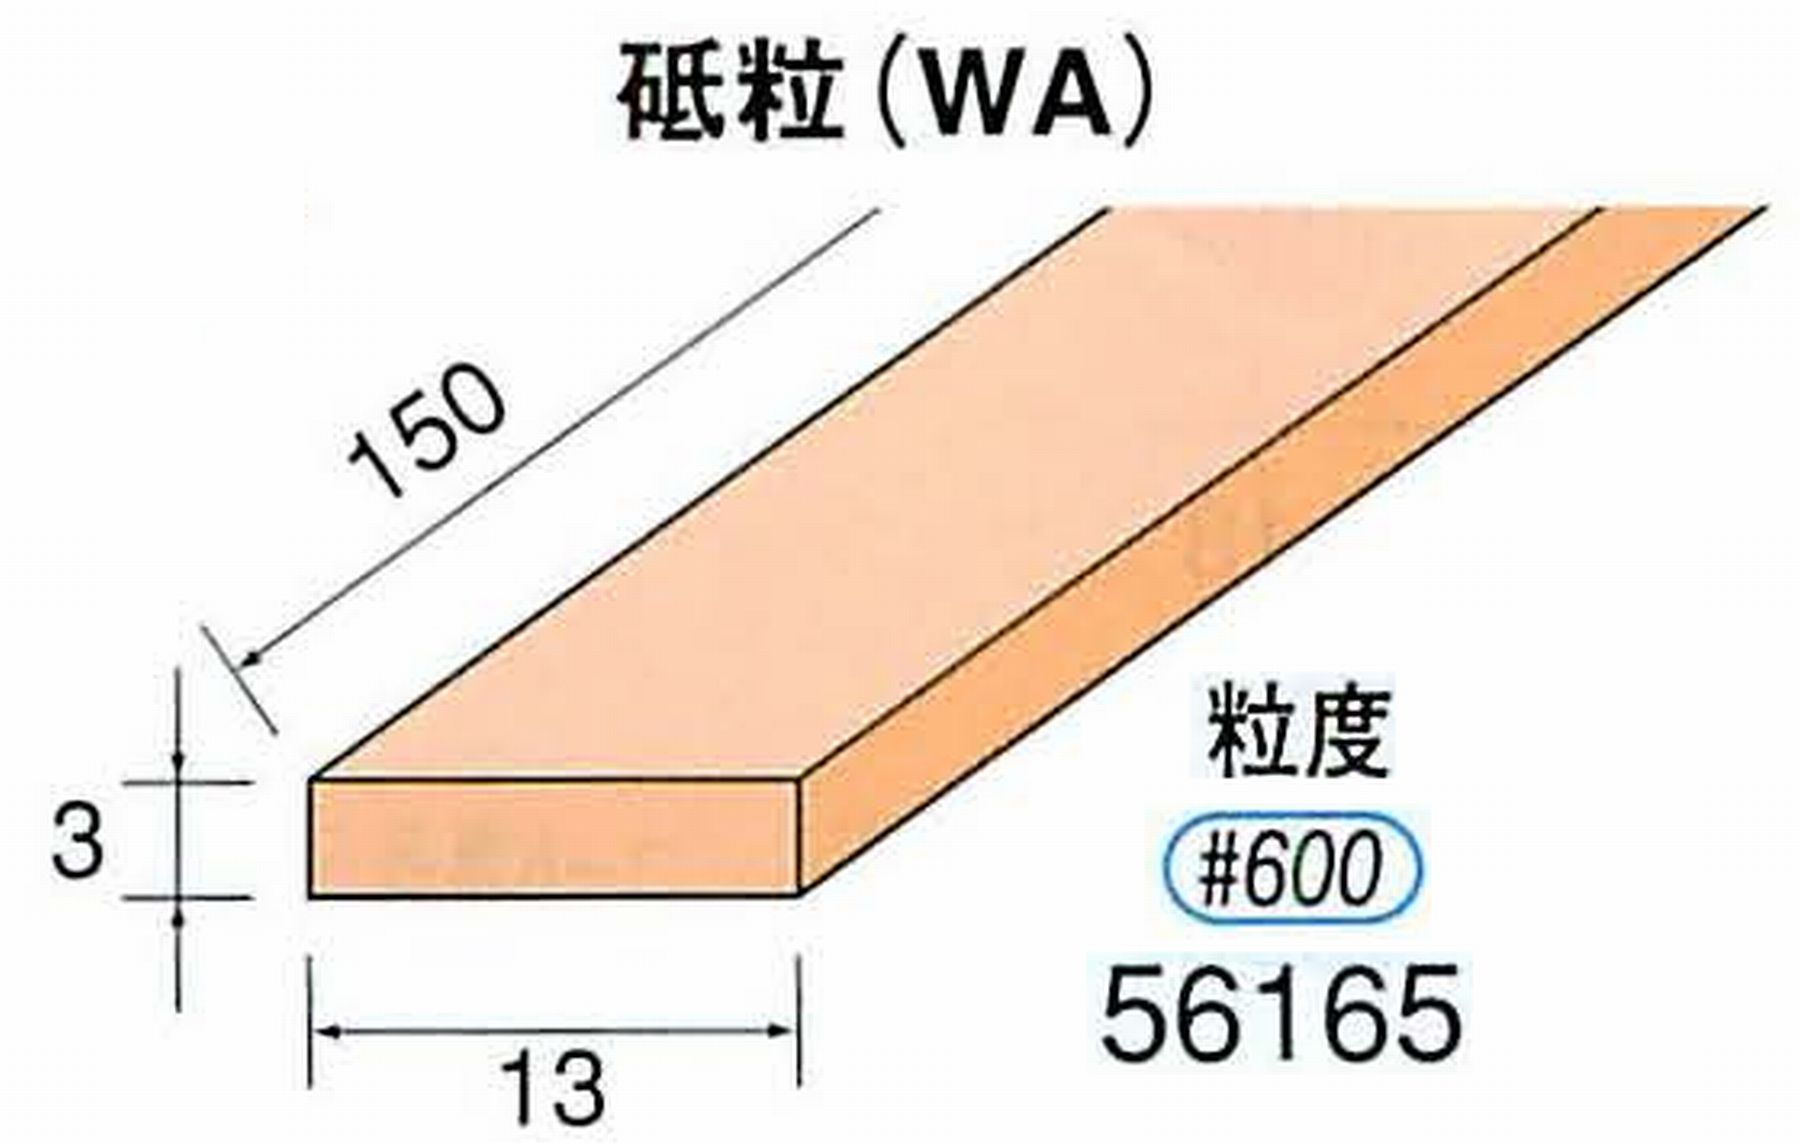 ナカニシ/NAKANISHI スティック砥石 スタンダードシリーズ 砥粒(WA) 56165